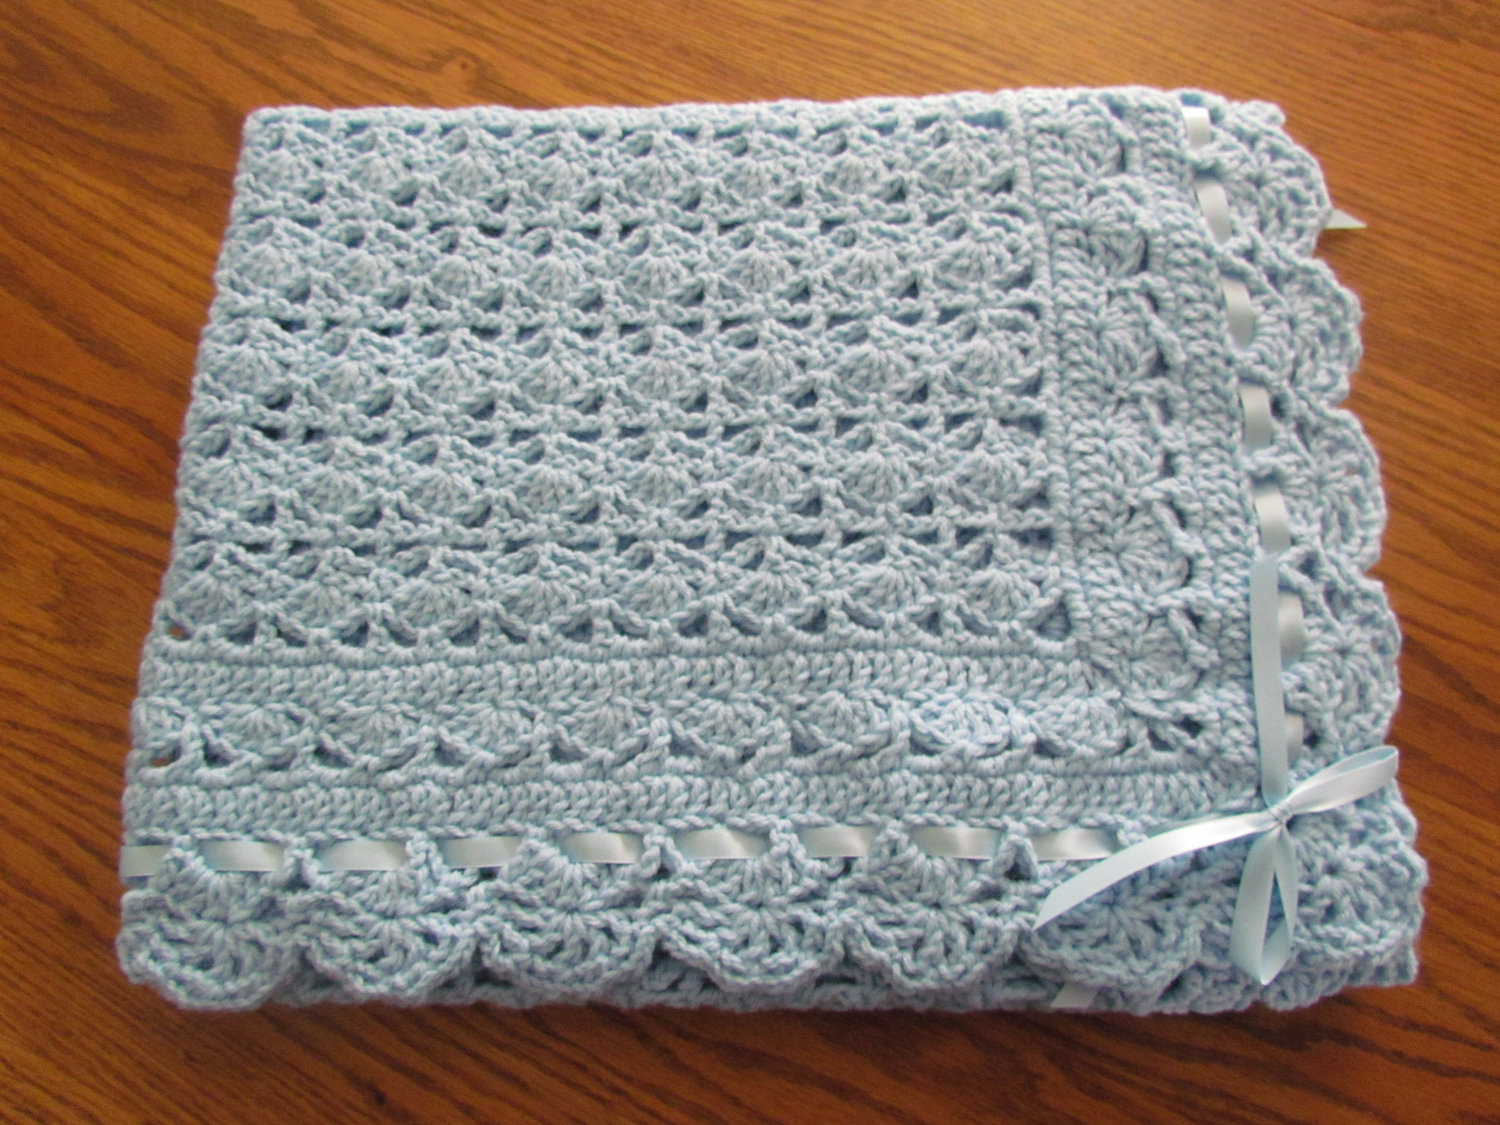 lacy-layette-crochet-pattern-13-lacy-baby-blanket-crochet-patterns-ideal-me-lacy-baby-outfit